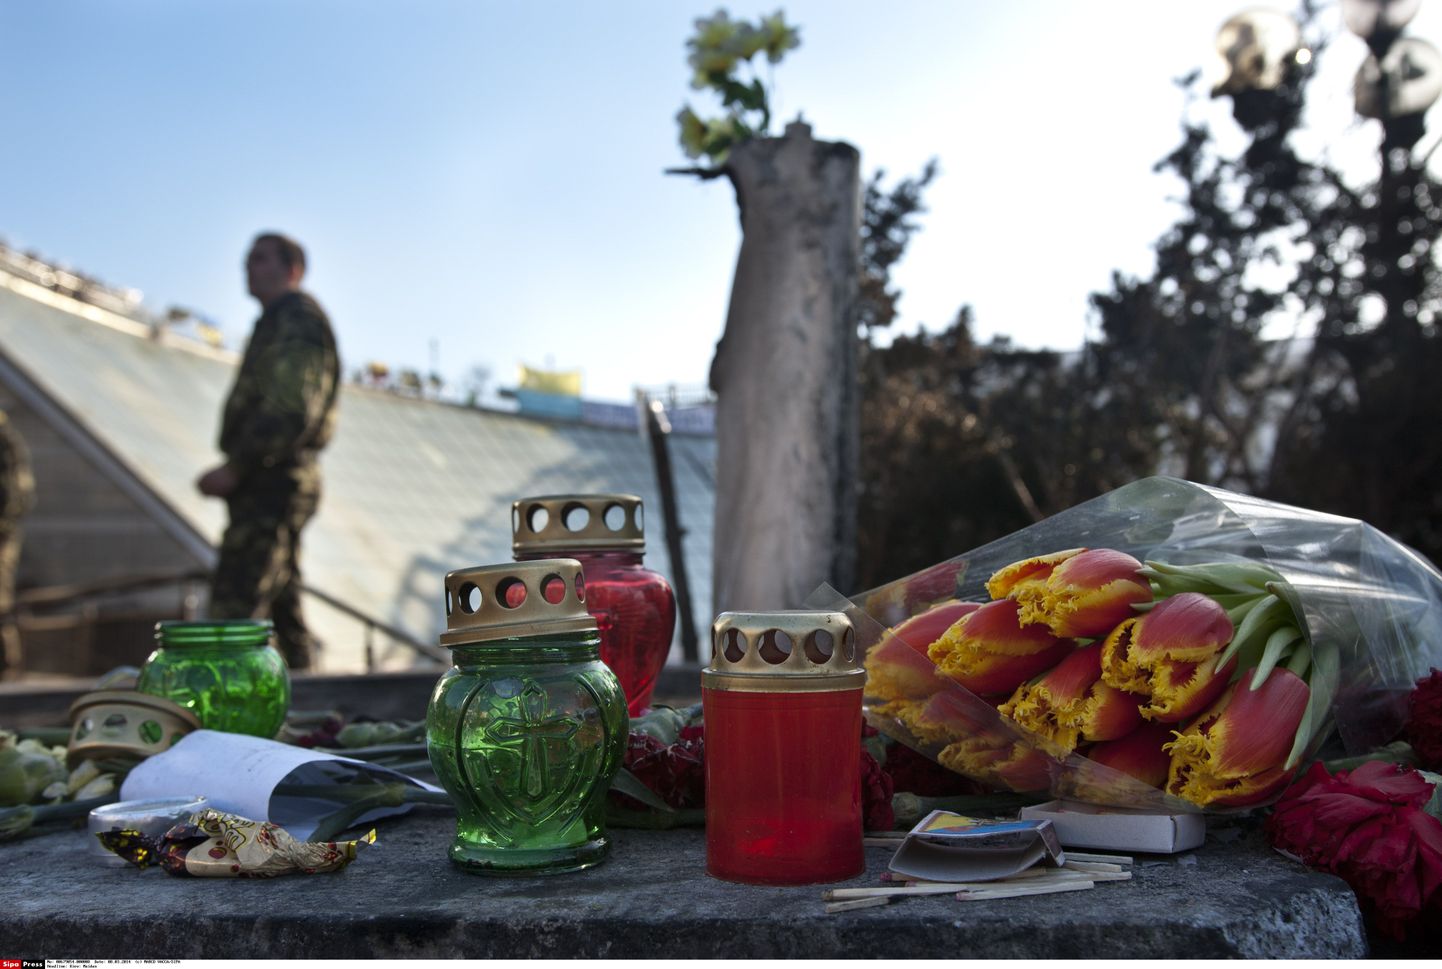 Kiievi Iseseisvuse väljakule viiakse endiselt lilli ja küünlaid hukkunute ja kadunute meenutamiseks.